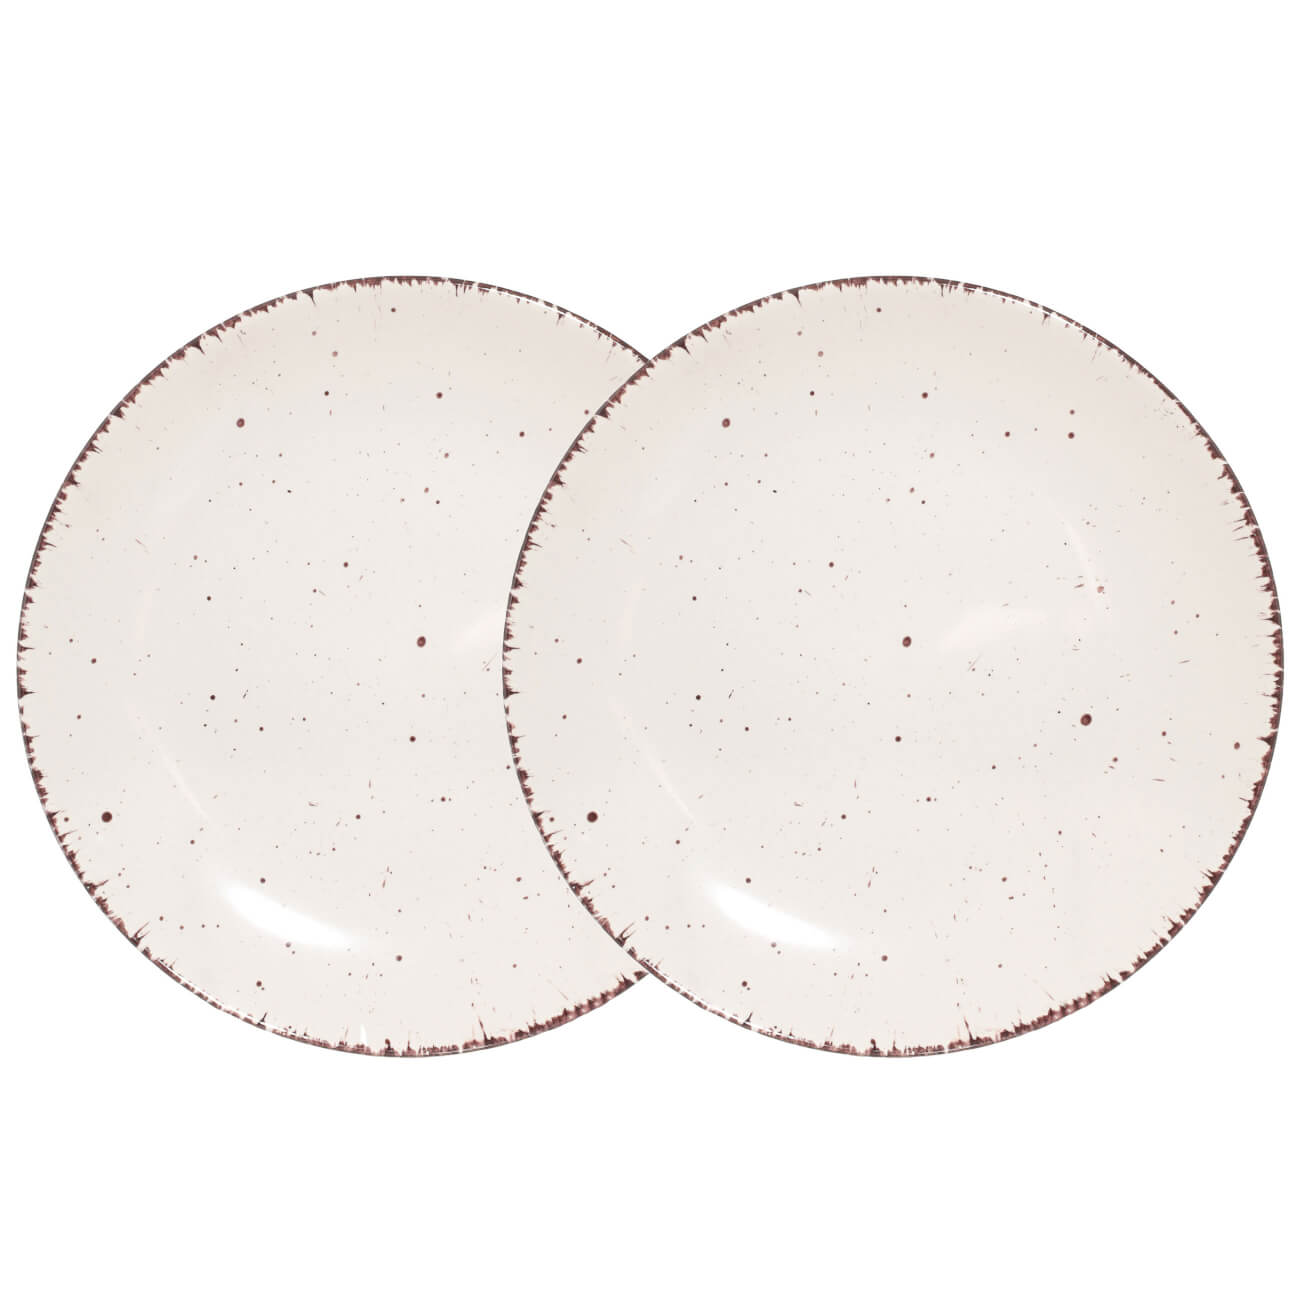 Тарелка закусочная, 21 см, 2 шт, керамика, бежевая, в крапинку, Speckled изображение № 1